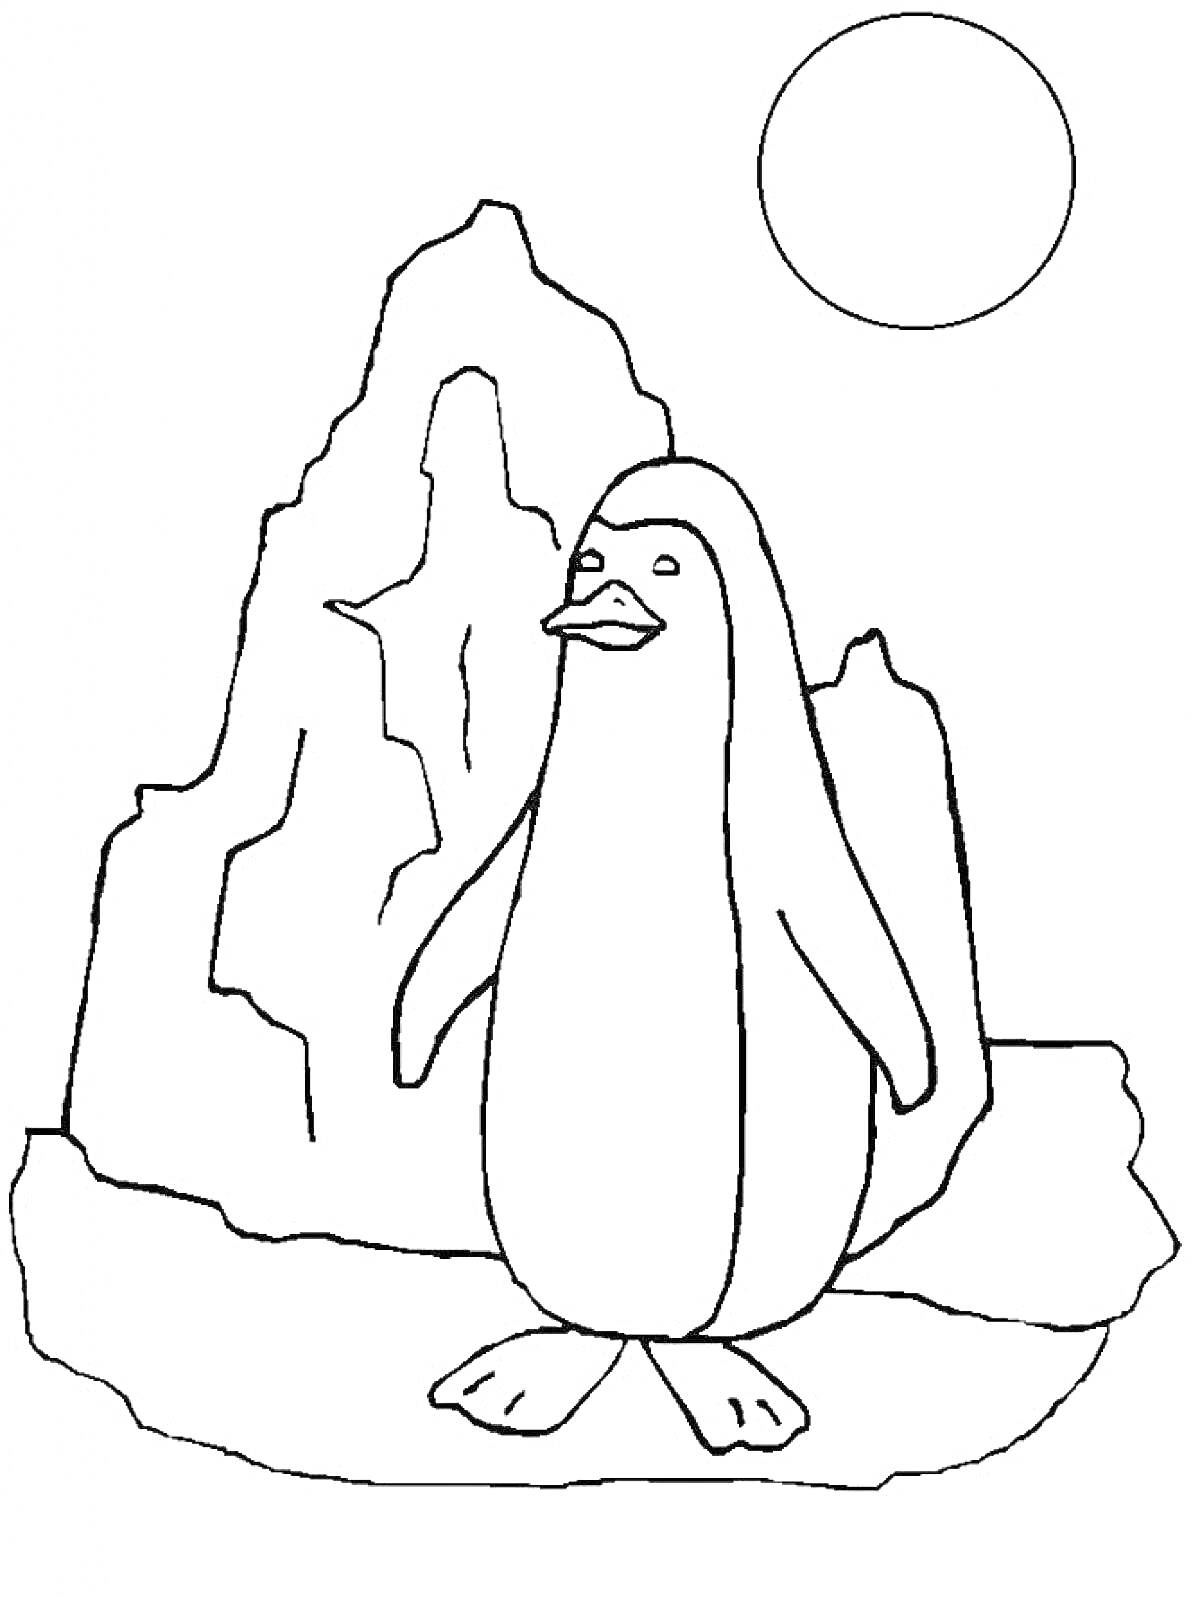 РаскраскаПингвин на льдине перед айсбергом и солнцем